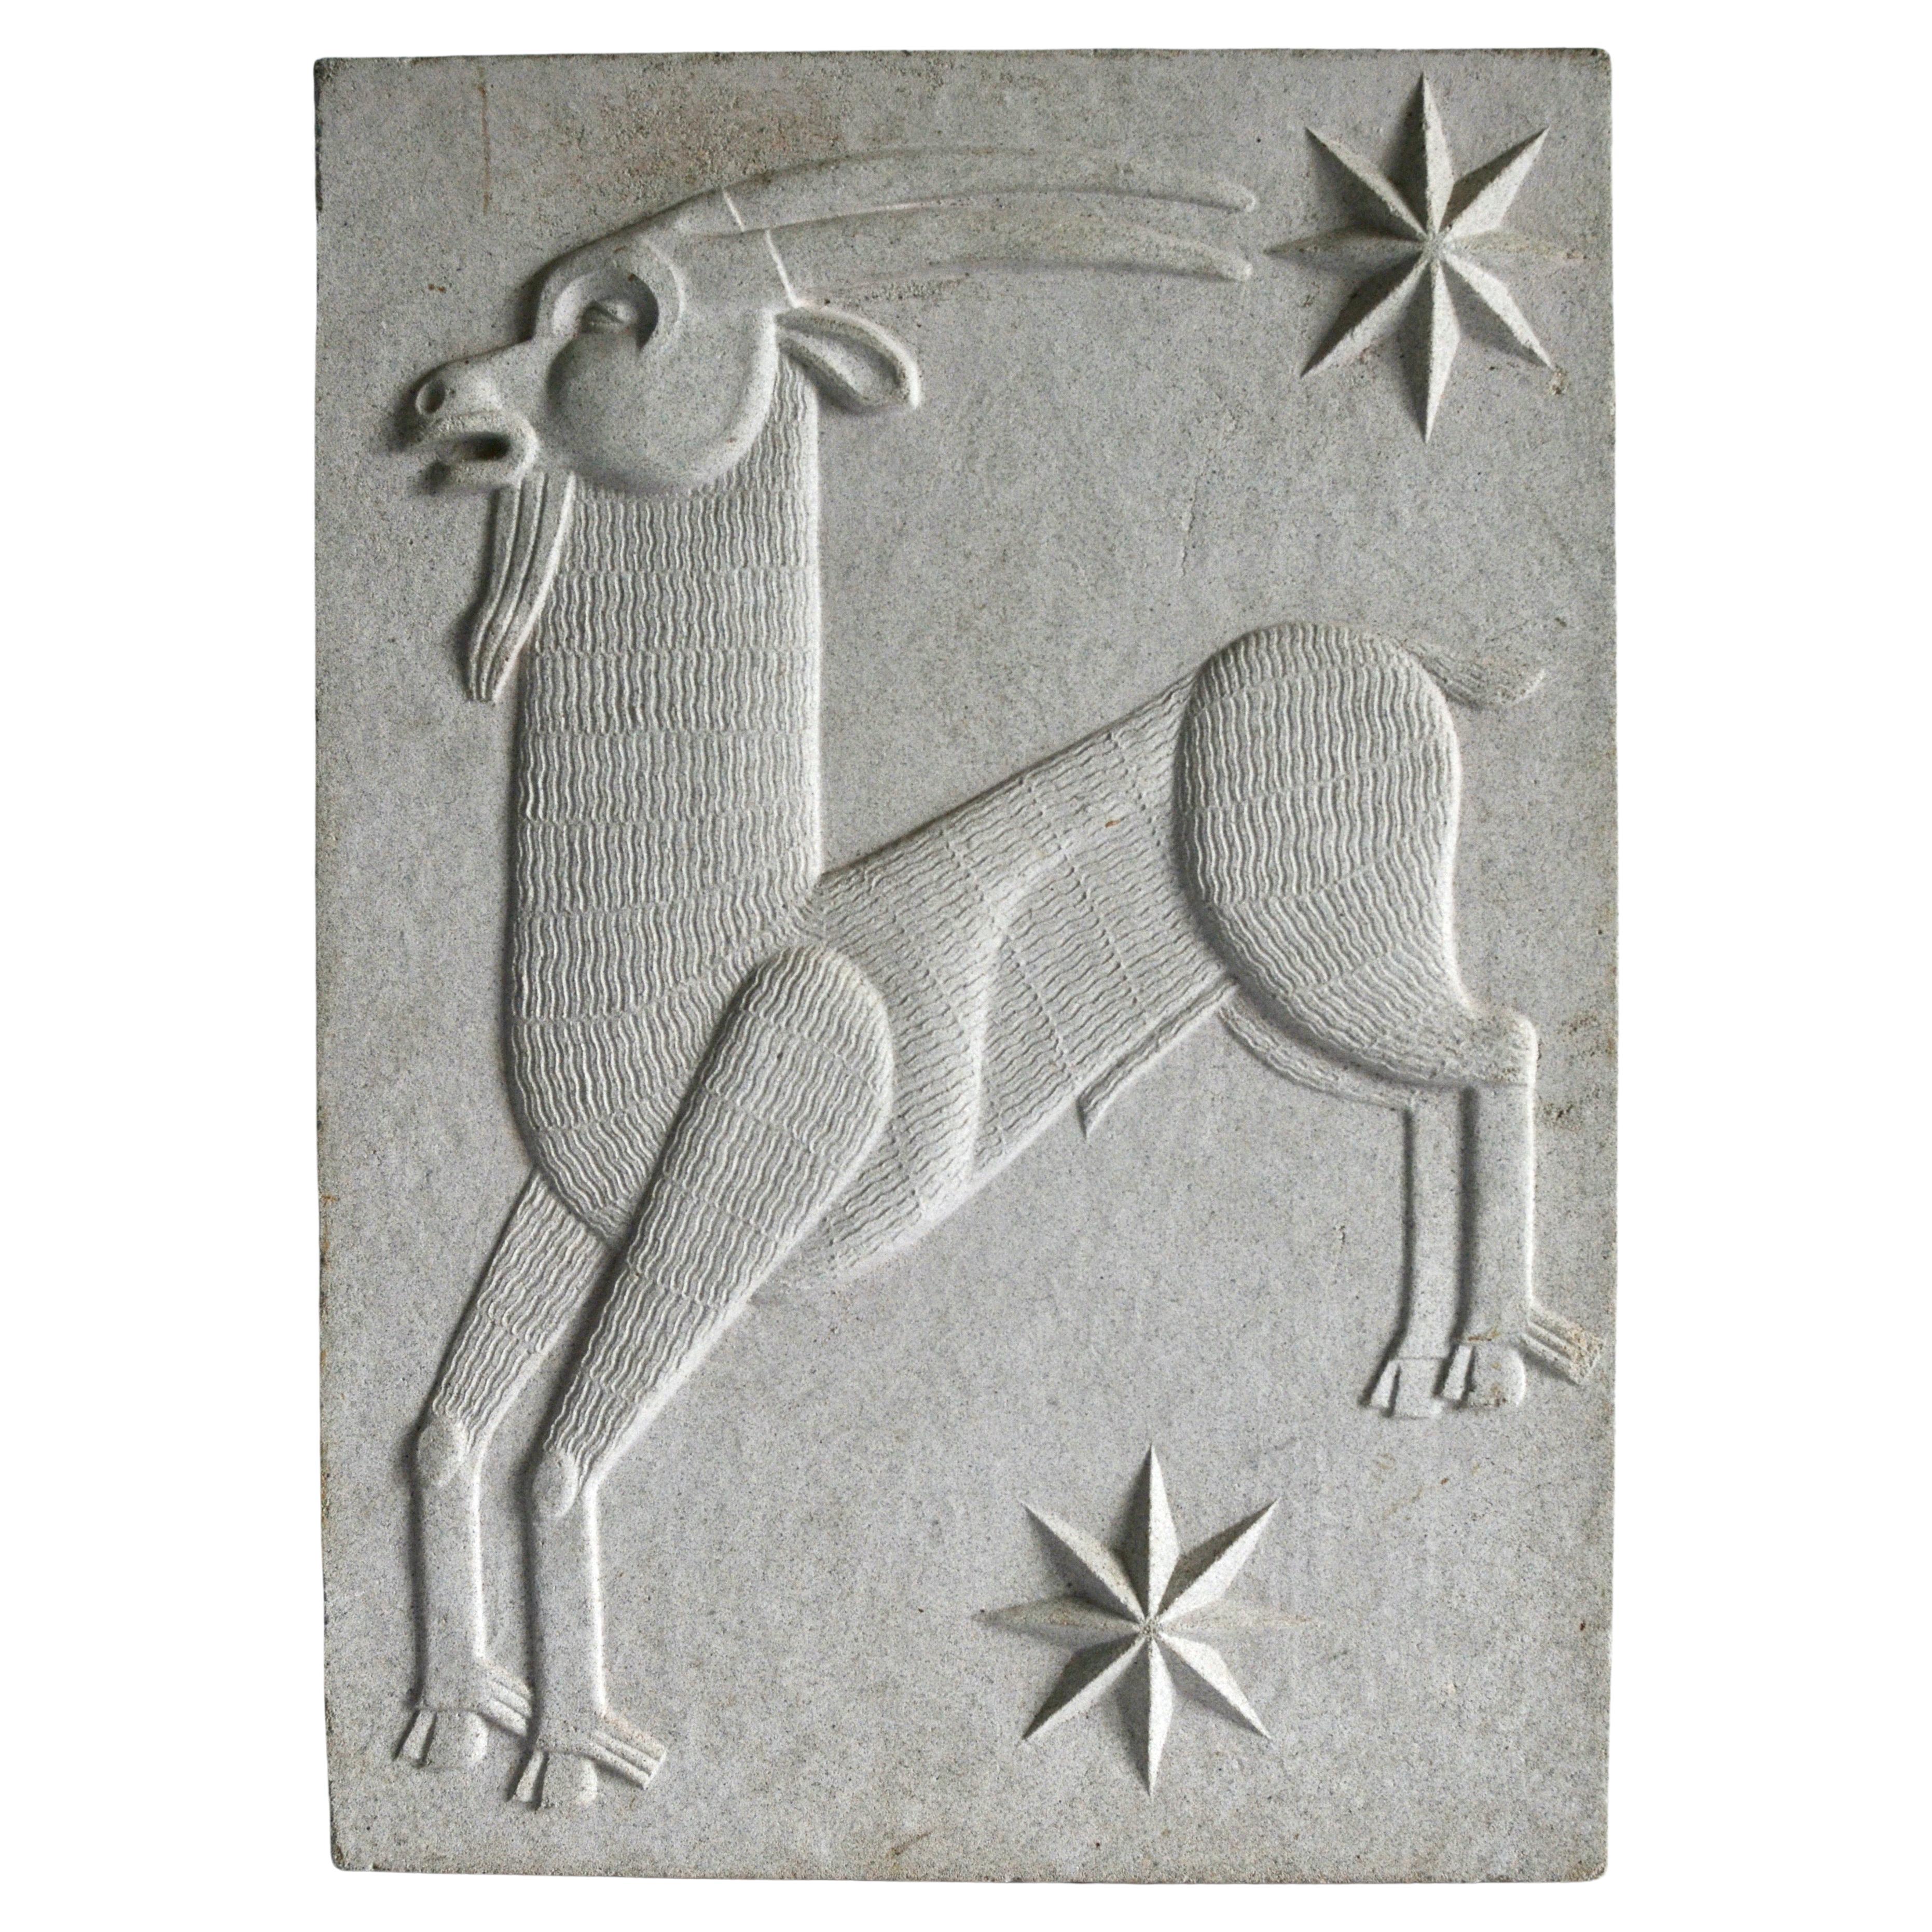 Zodiac Artificial Stone Relief Sign of Capricorn, c. 1940